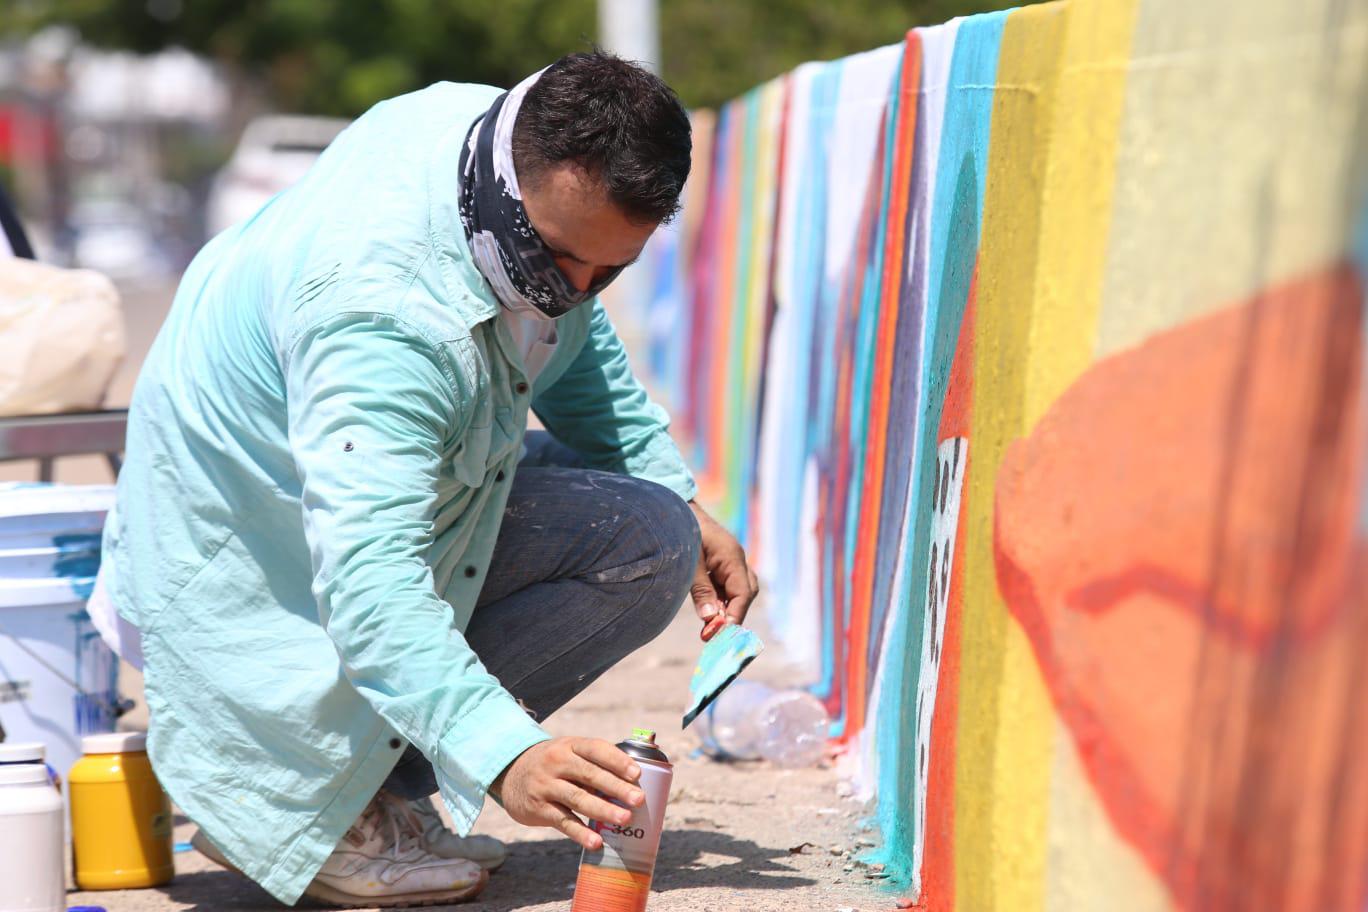 $!Con arte urbano embellecen puente del Estero del Infiernillo